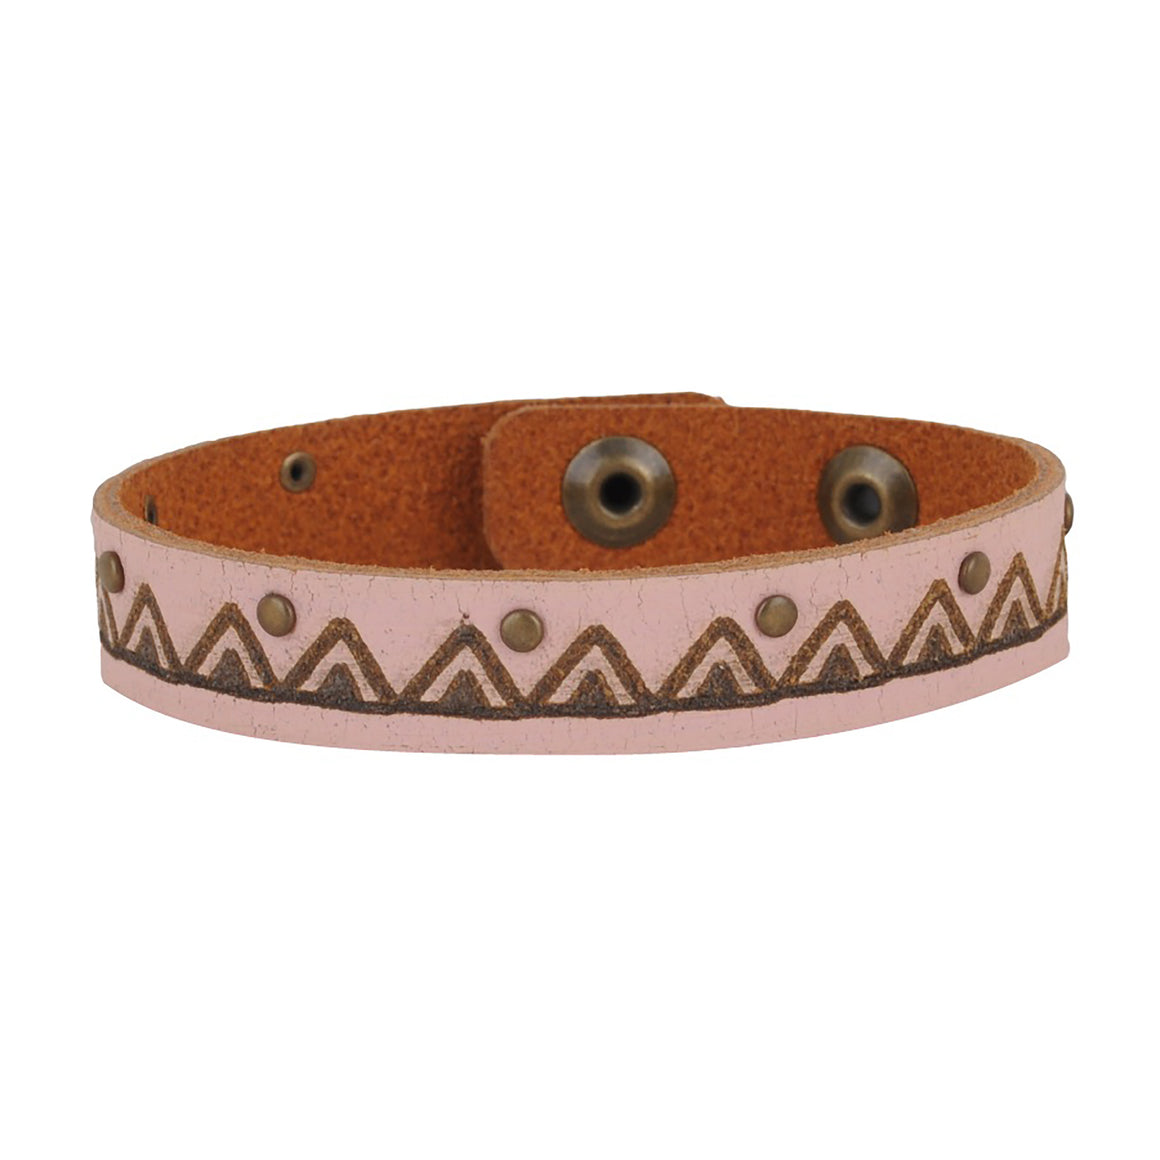 2131 - Mountain Studded Bracelet